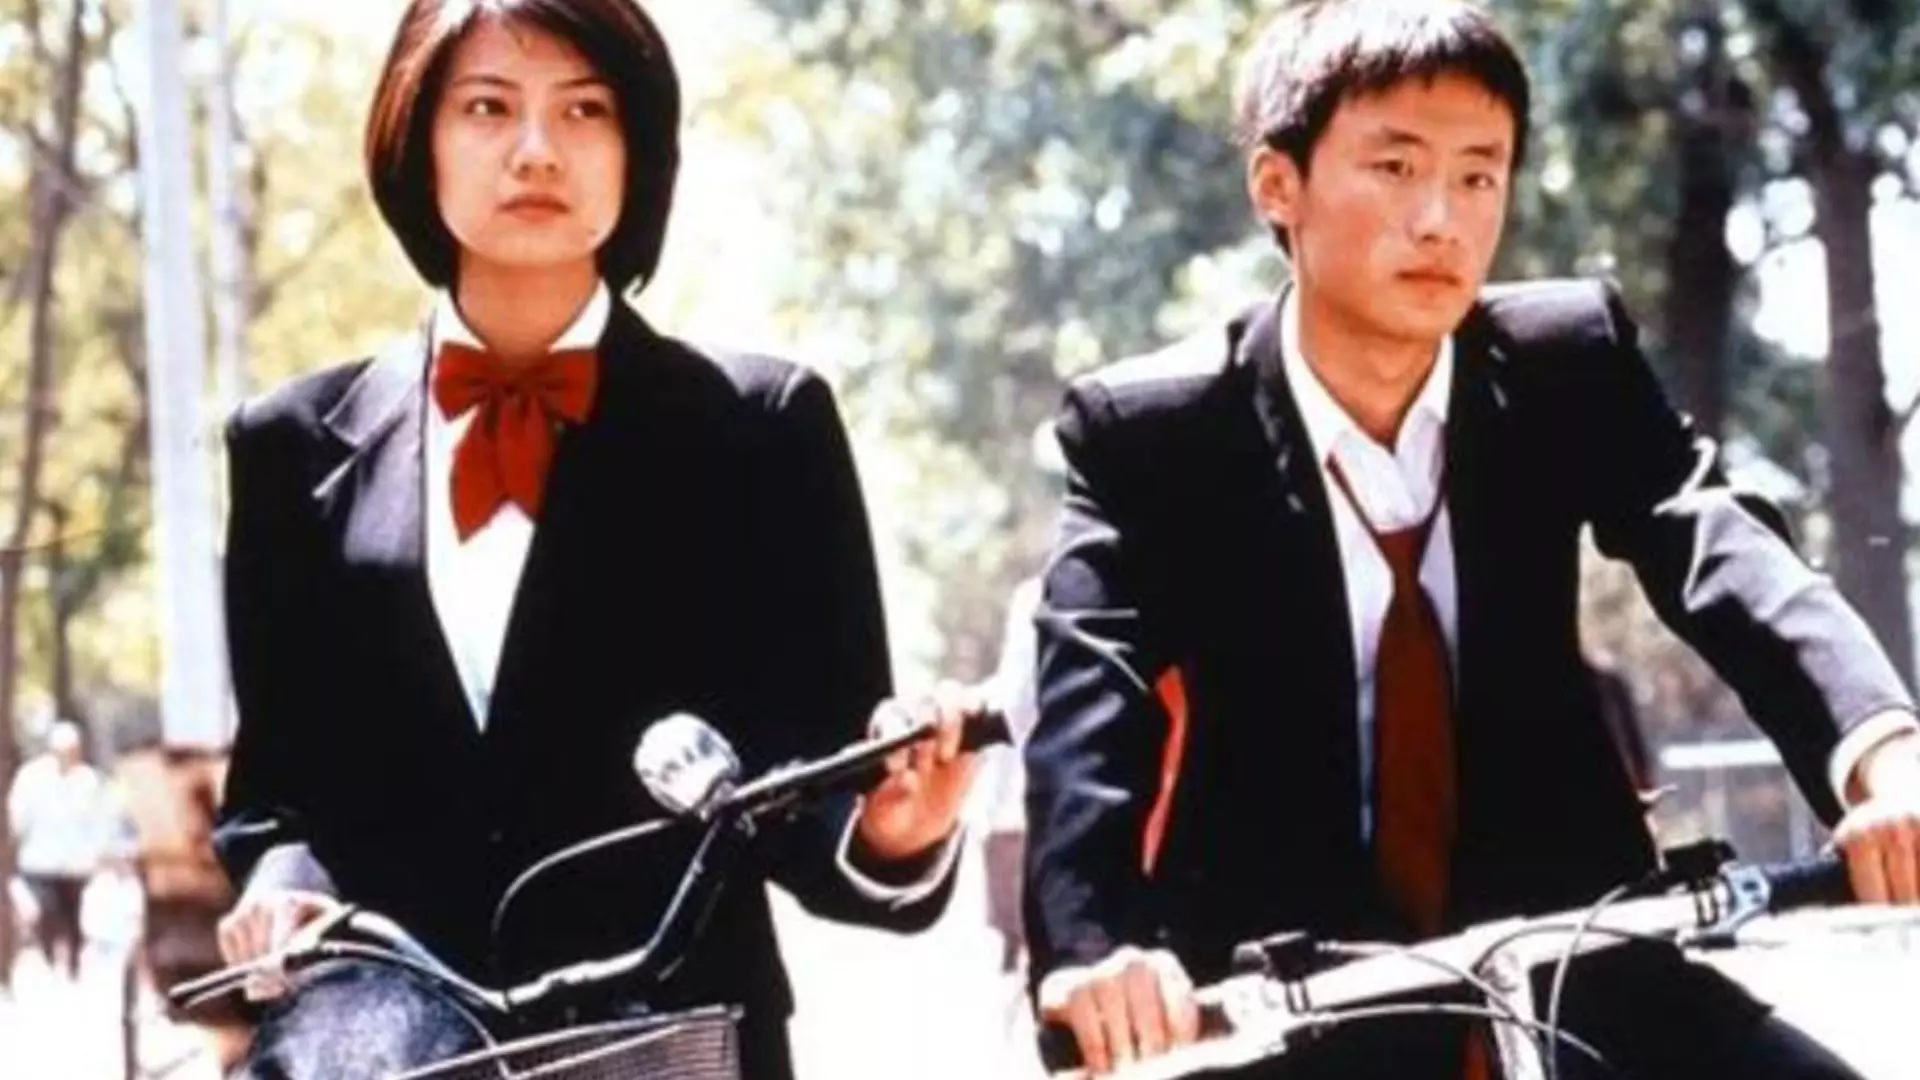 گویی به همراه دوستش در فیلم دوچرخه پکن